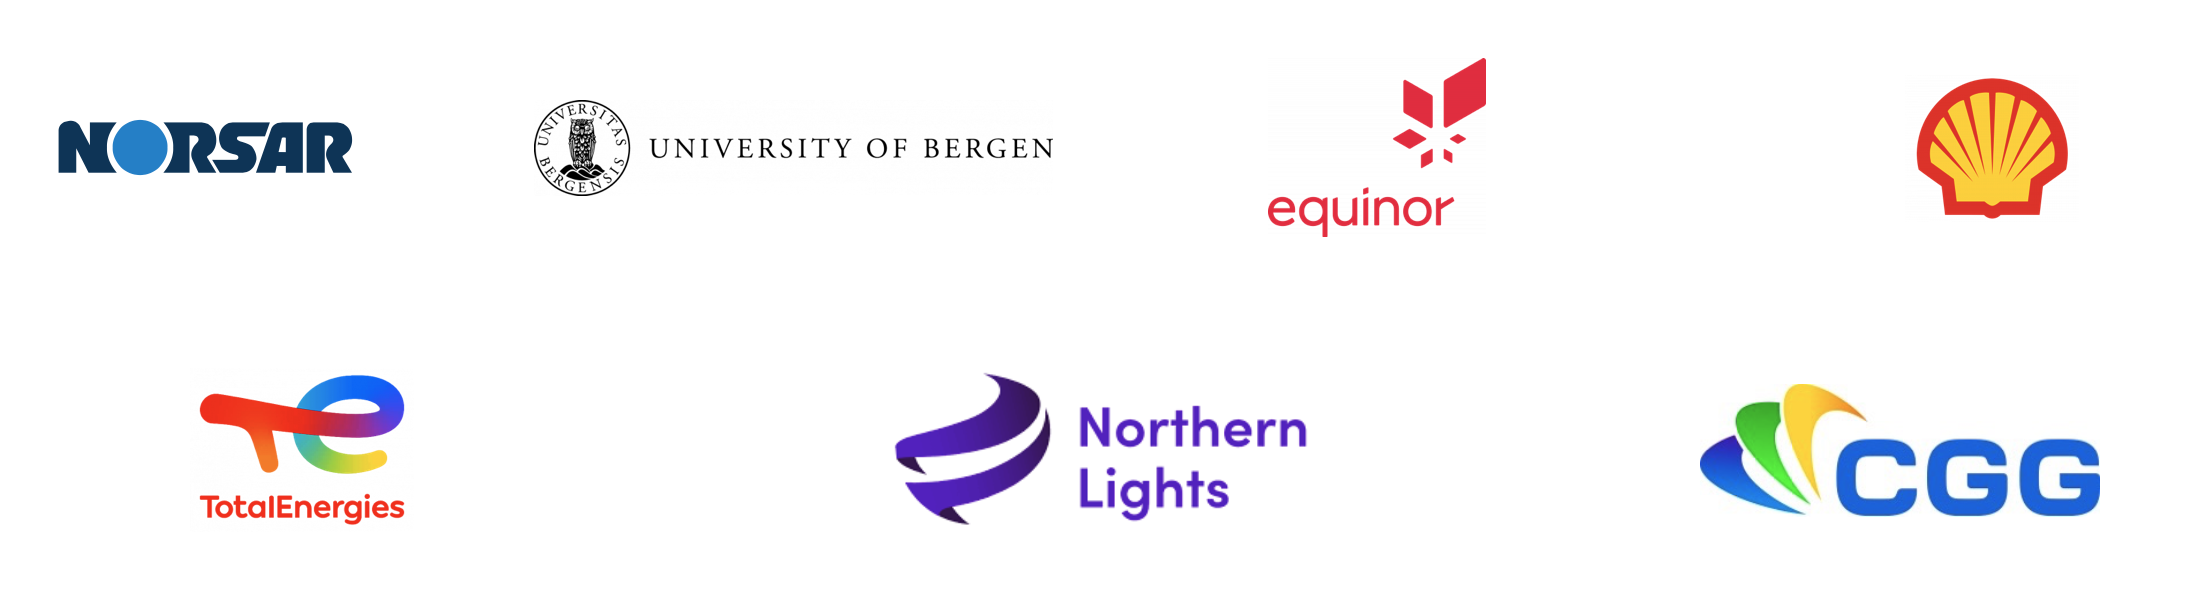 Partner logos 1